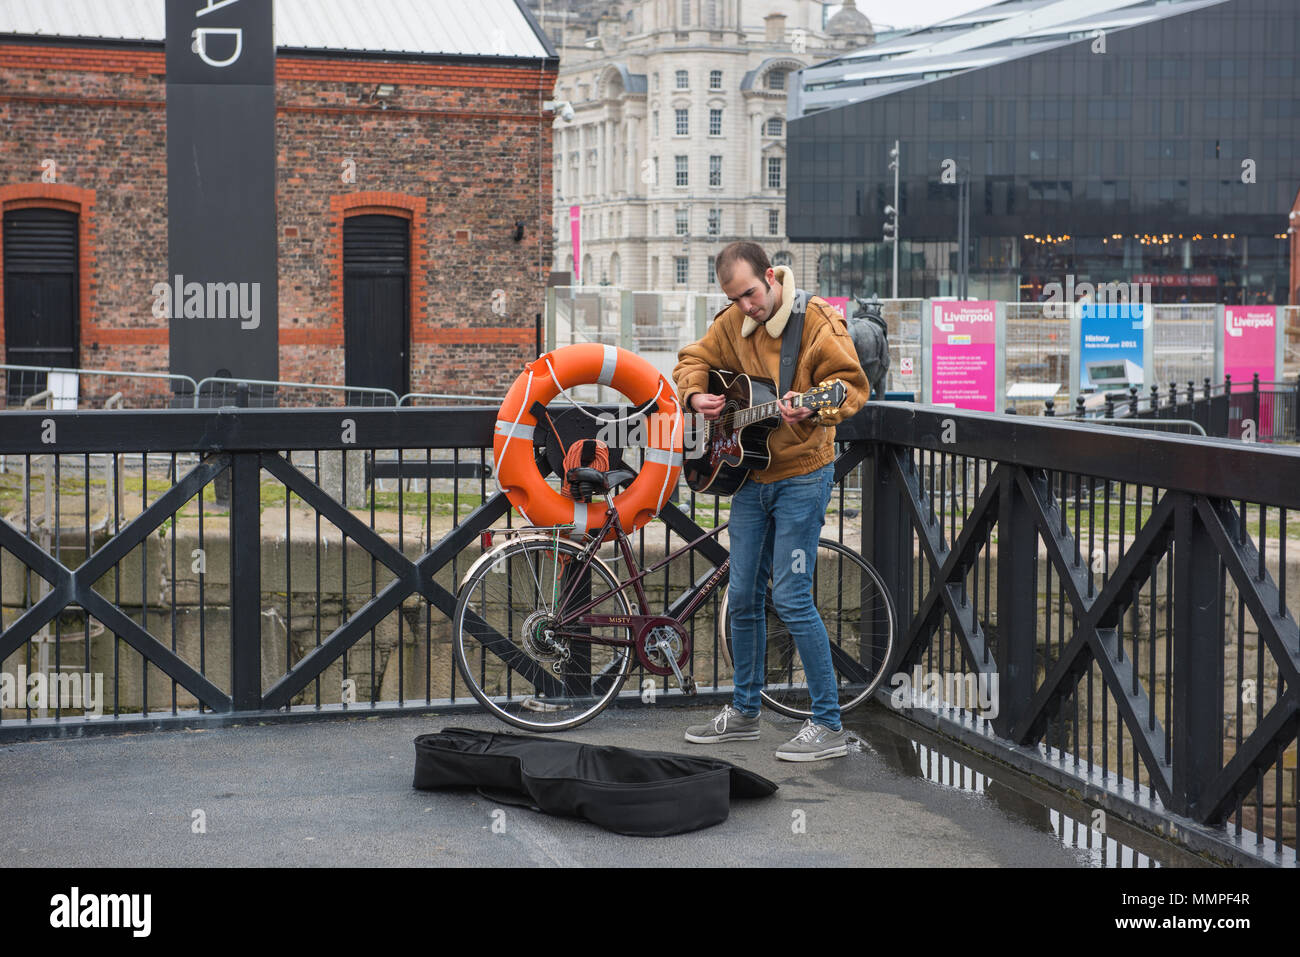 Musicien ambulant au Liverpool docks Banque D'Images